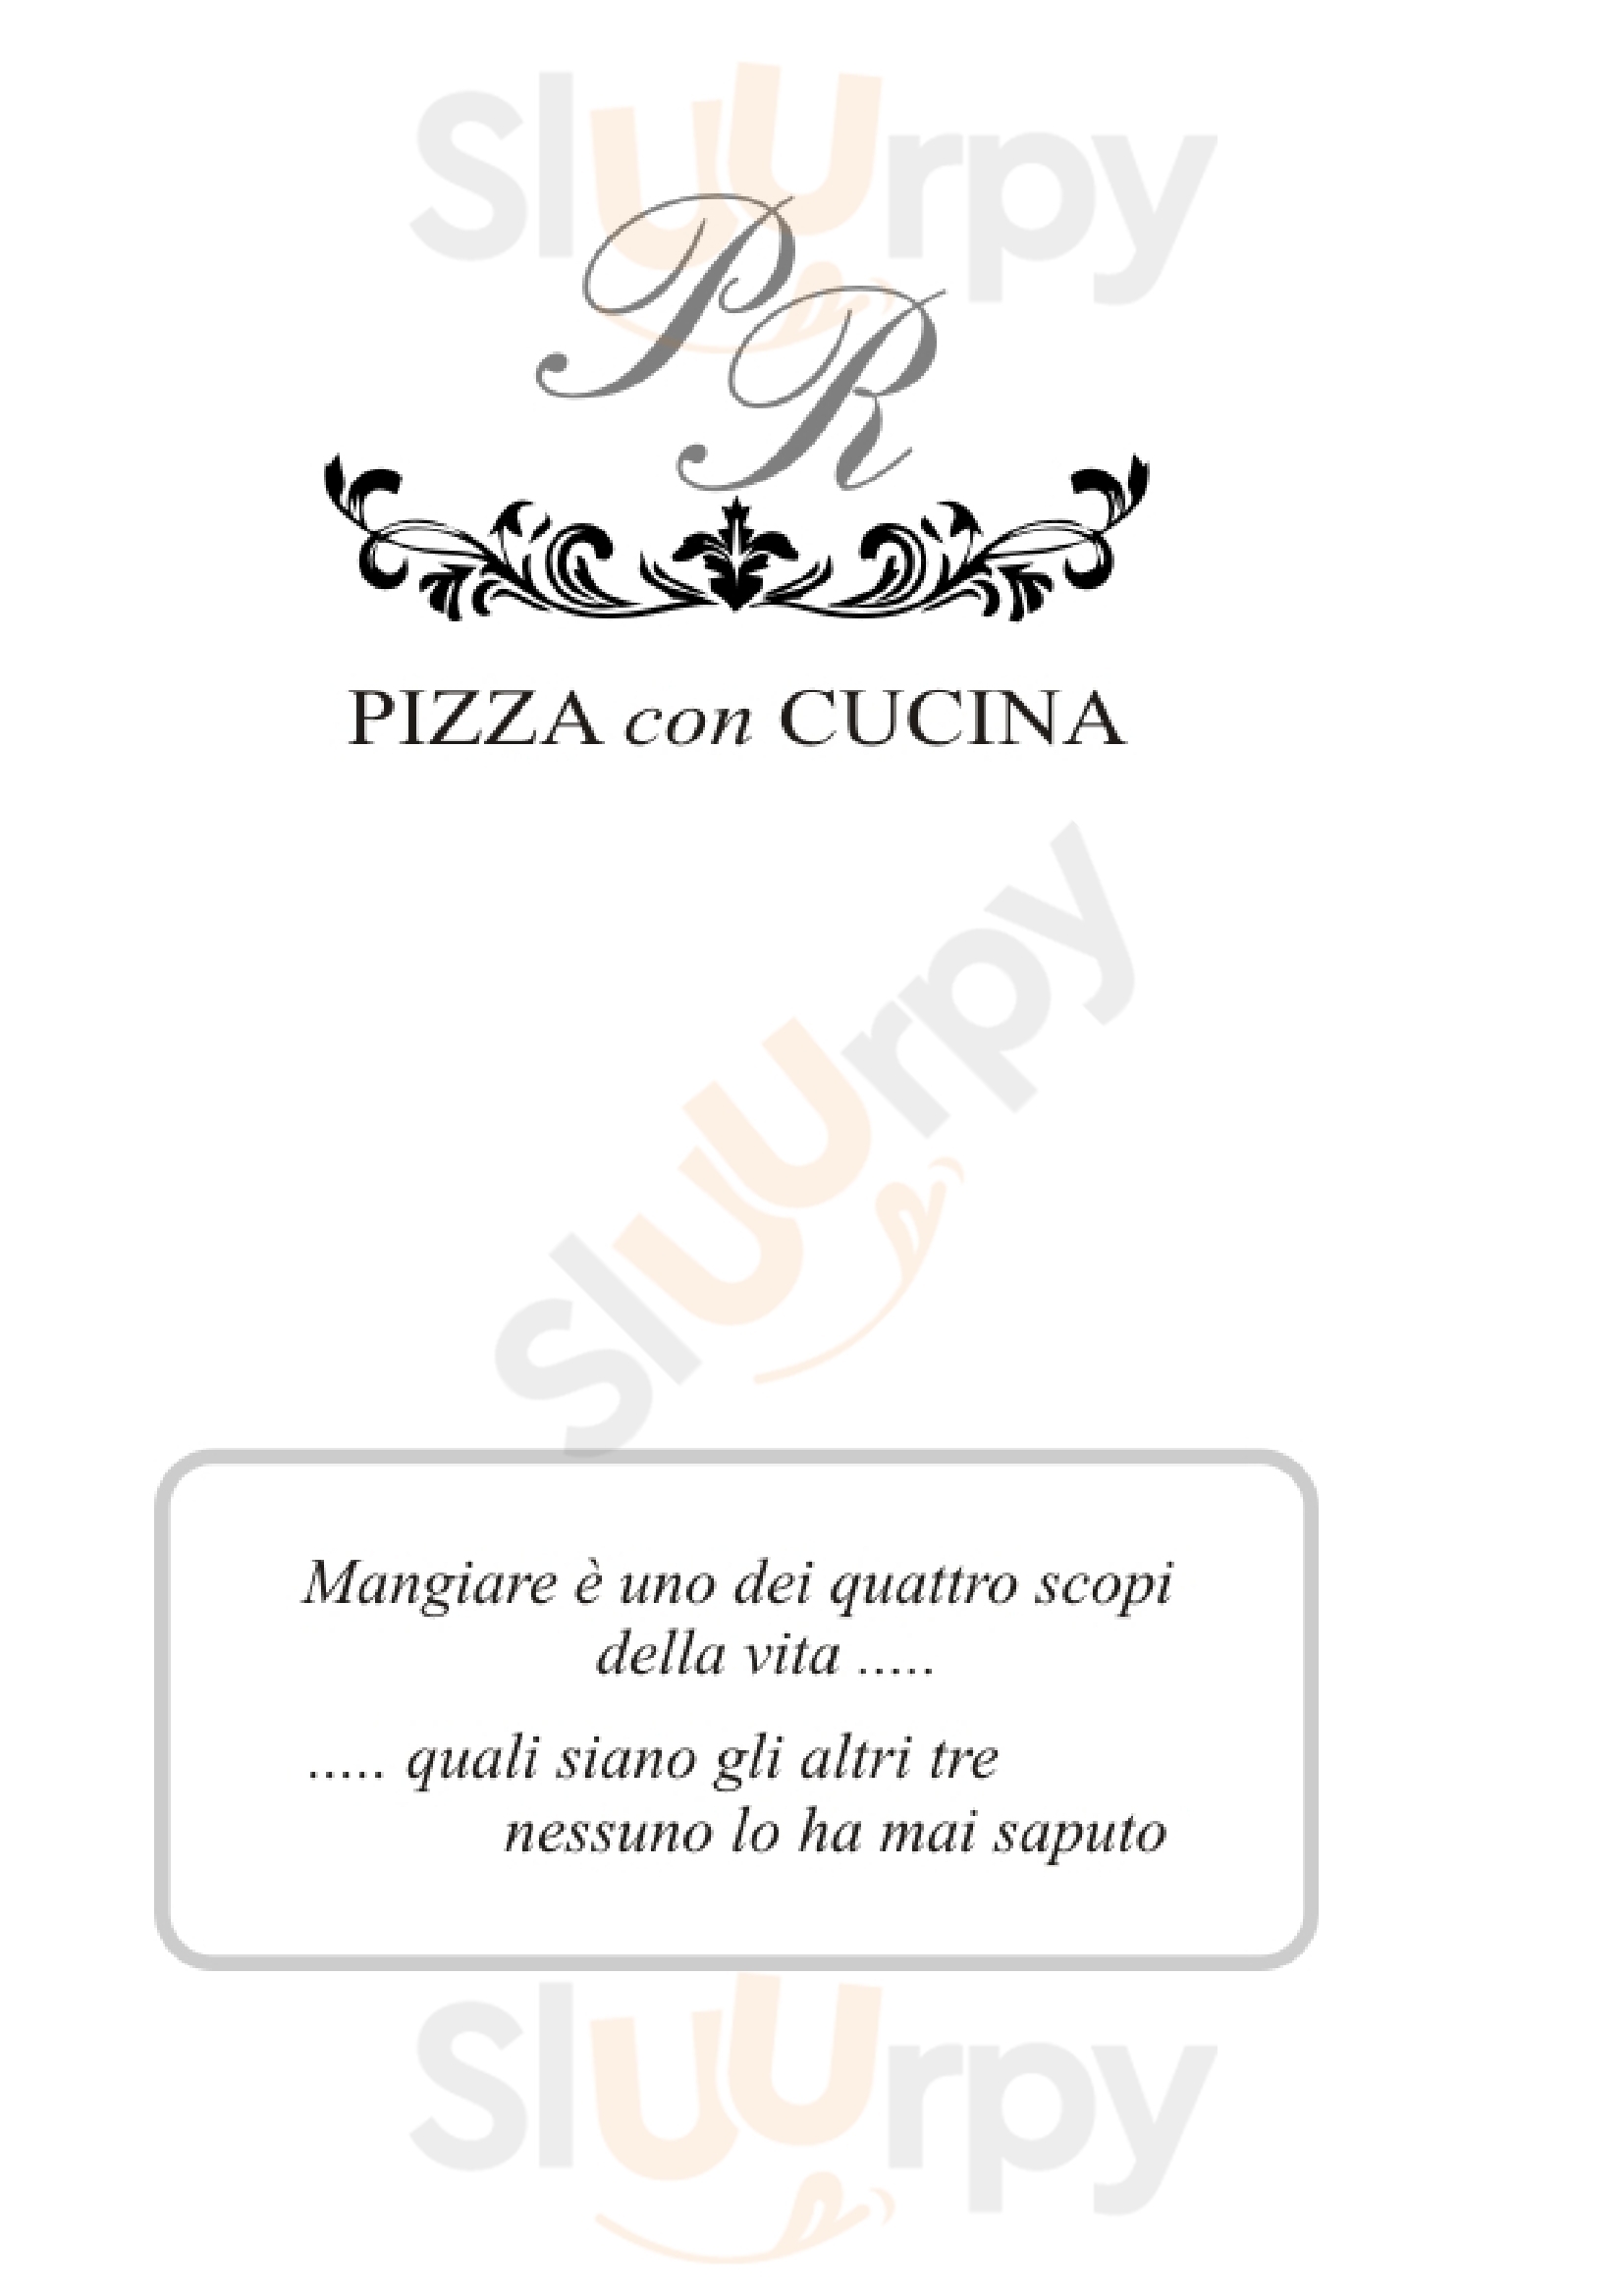 P. R. - Pizza Con Cucina Mezzano menù 1 pagina